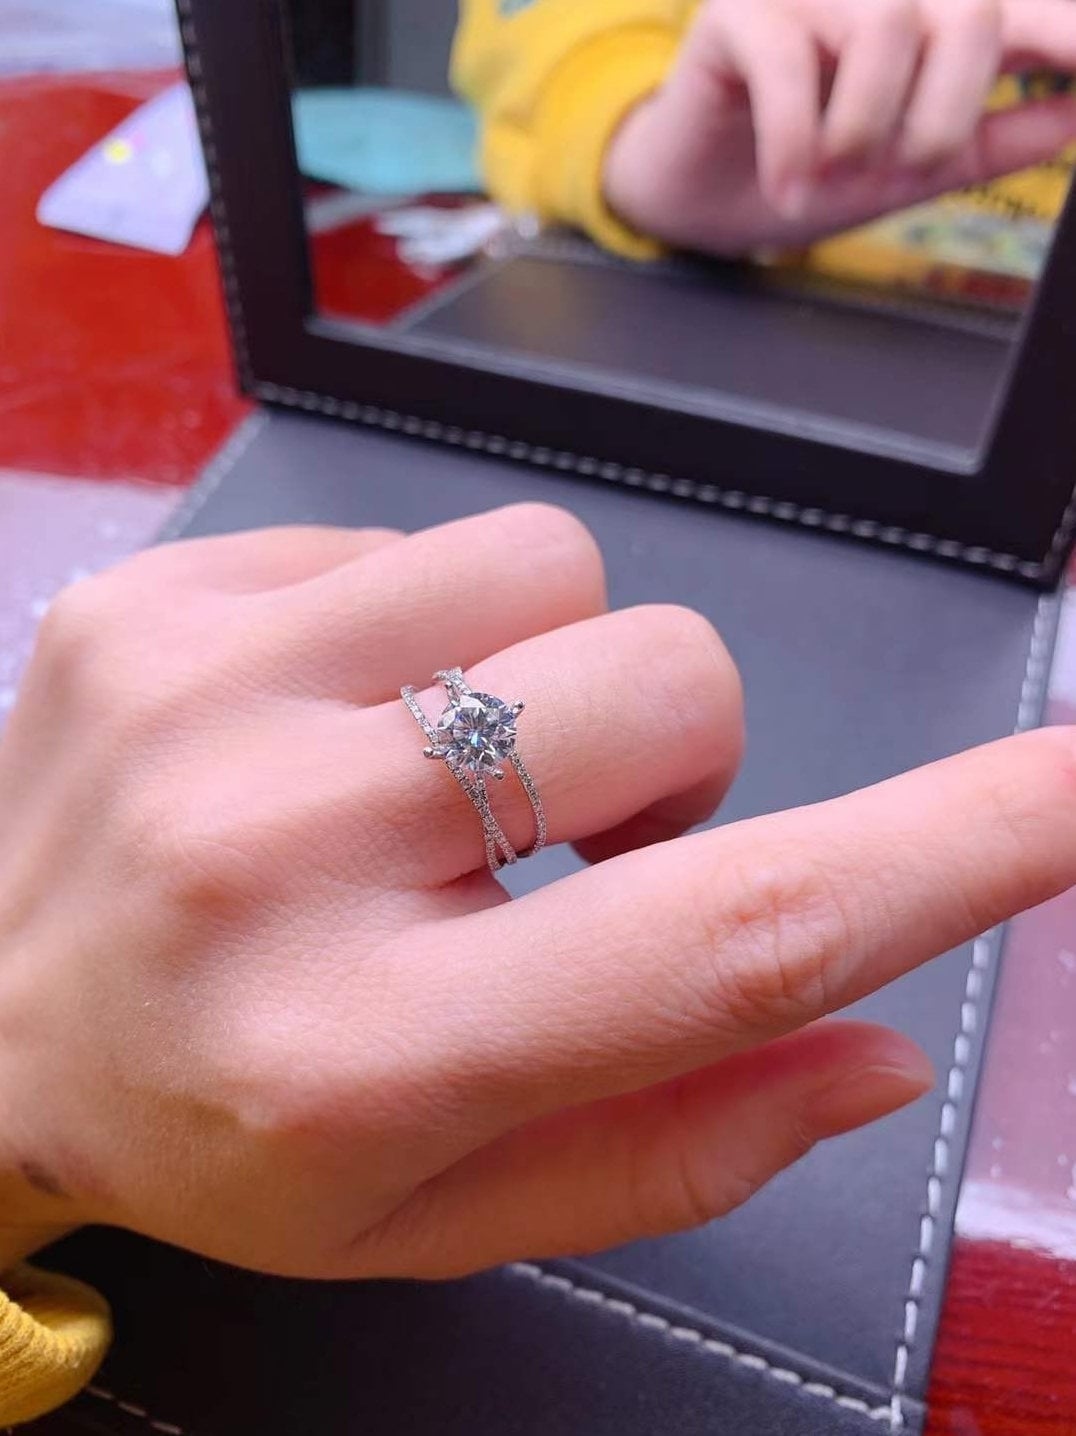 1 Carat Top Grade Moissanite Ring, Sterling Silver Rings for Women, Handmade Wedding Engagement Gift For Her